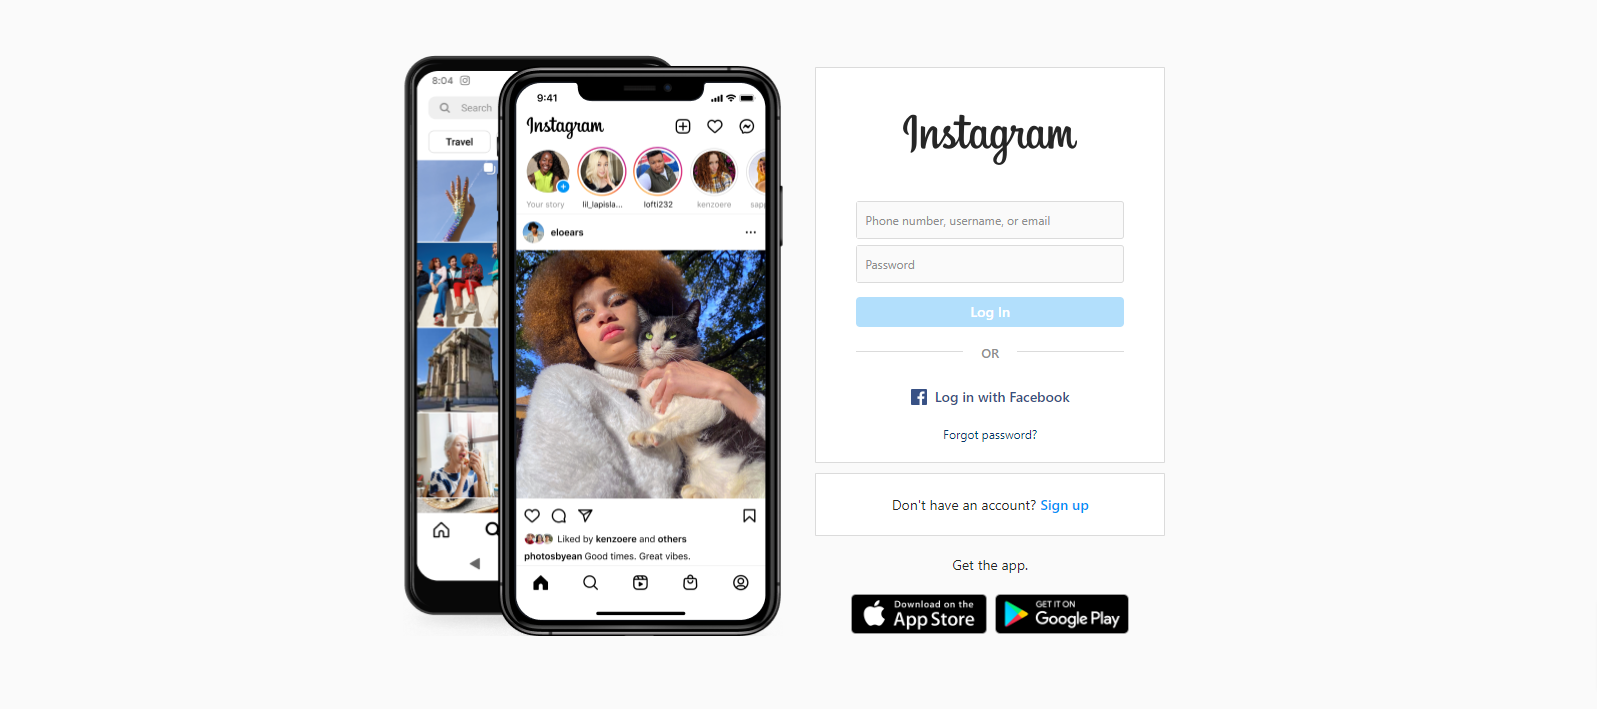 Instagram social media image platform